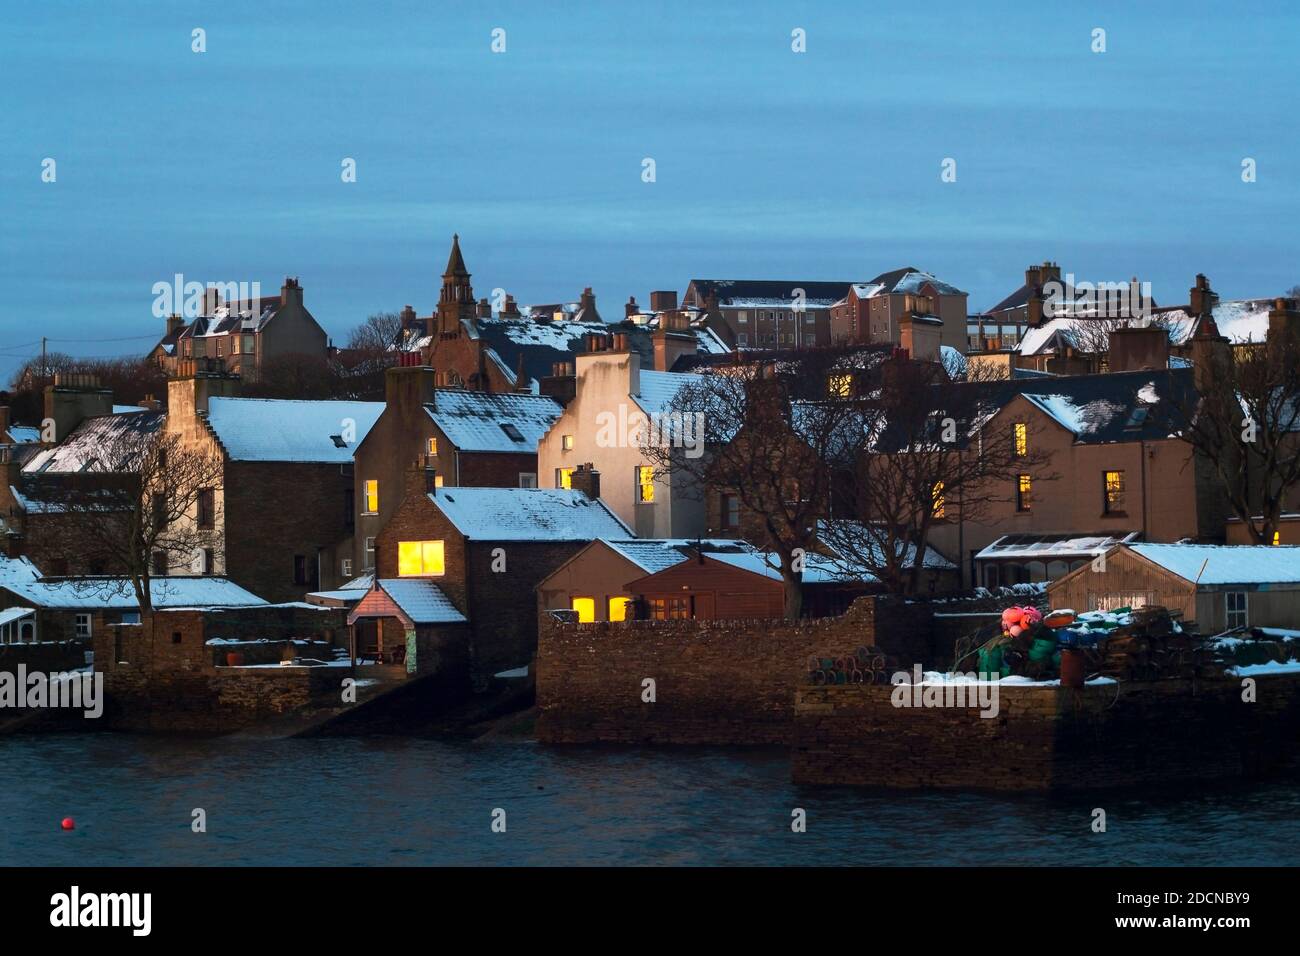 Lever du soleil d'hiver avec de la neige sur les toits de pierre traditionnelle construite Maisons dans la ville écossaise sur les îles Orcades Banque D'Images